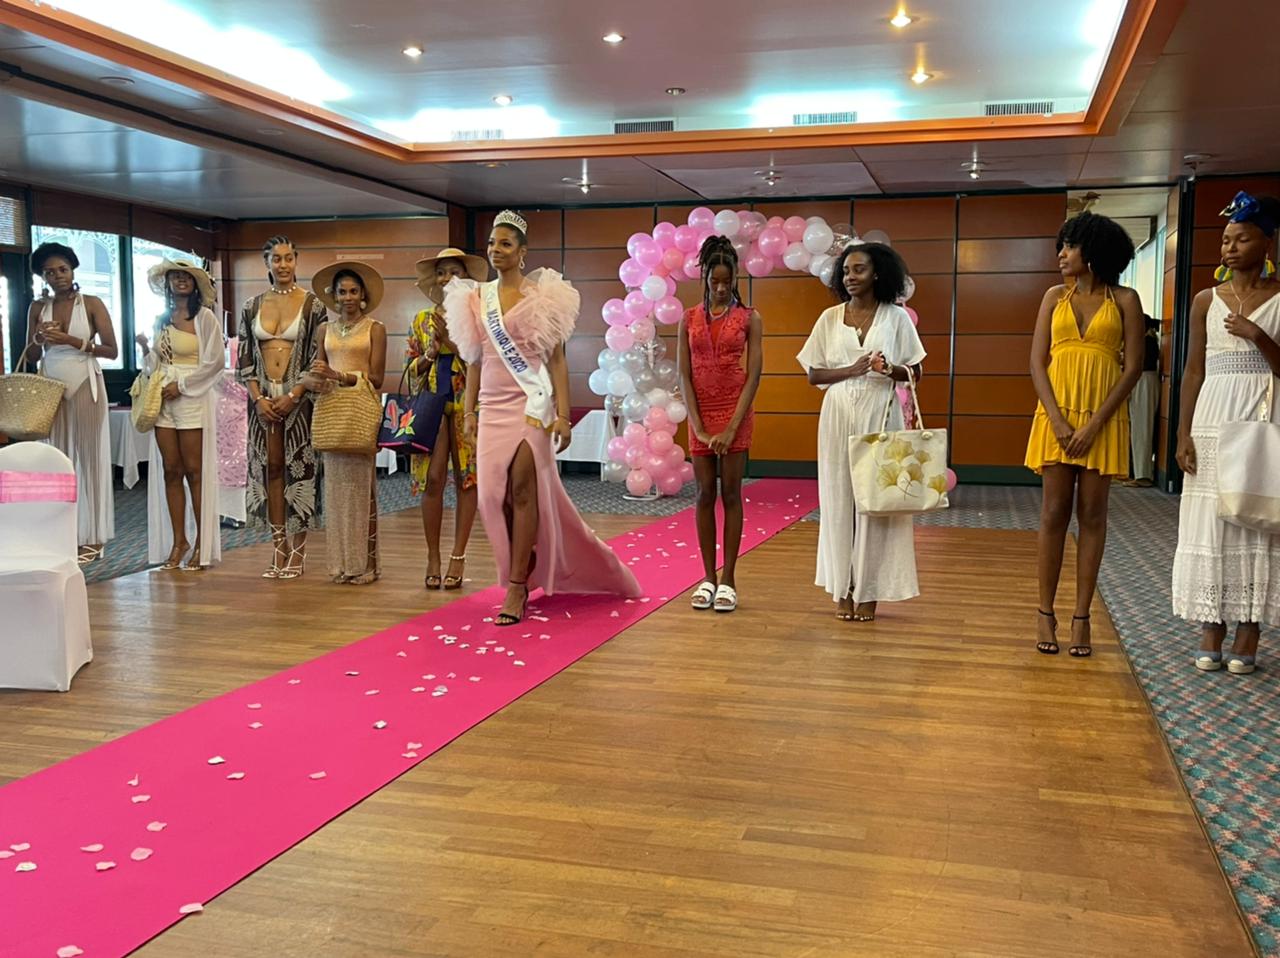     Miss Martinique 2021 : un ultime casting avec Morgane Edvige mais sans Véronique Caloc

